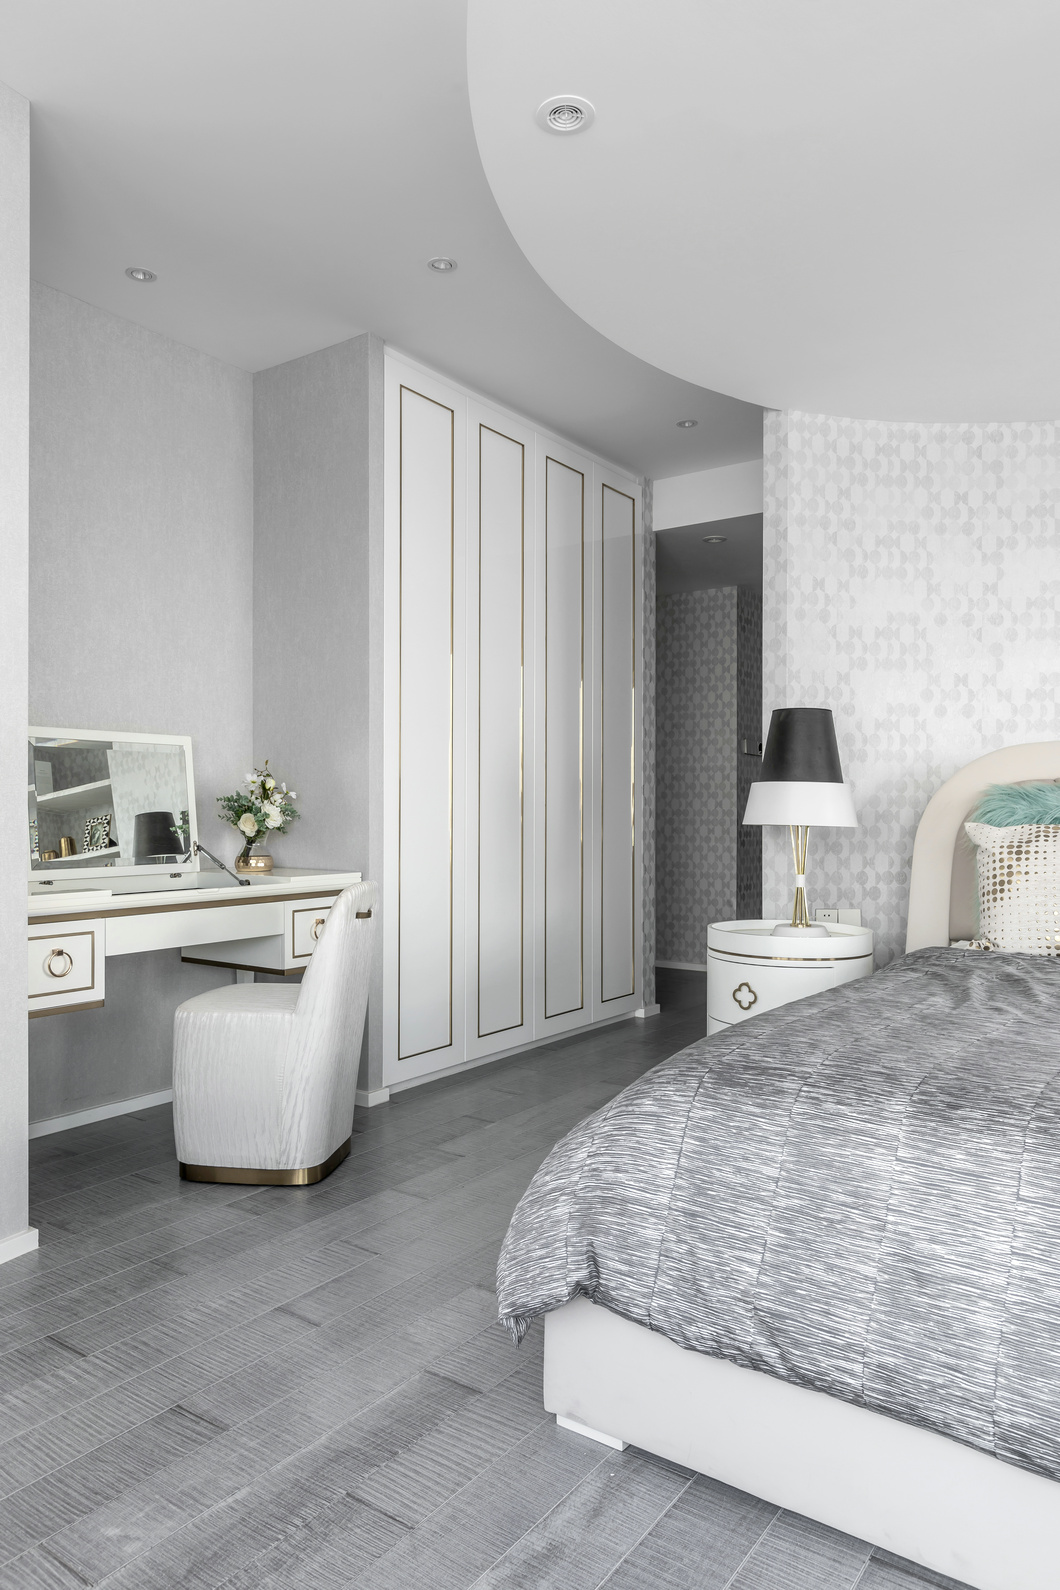 卧室弧形设计简洁大气不失清新优雅，空间以灰色为基调，弧形玻璃让整个空间放大了。